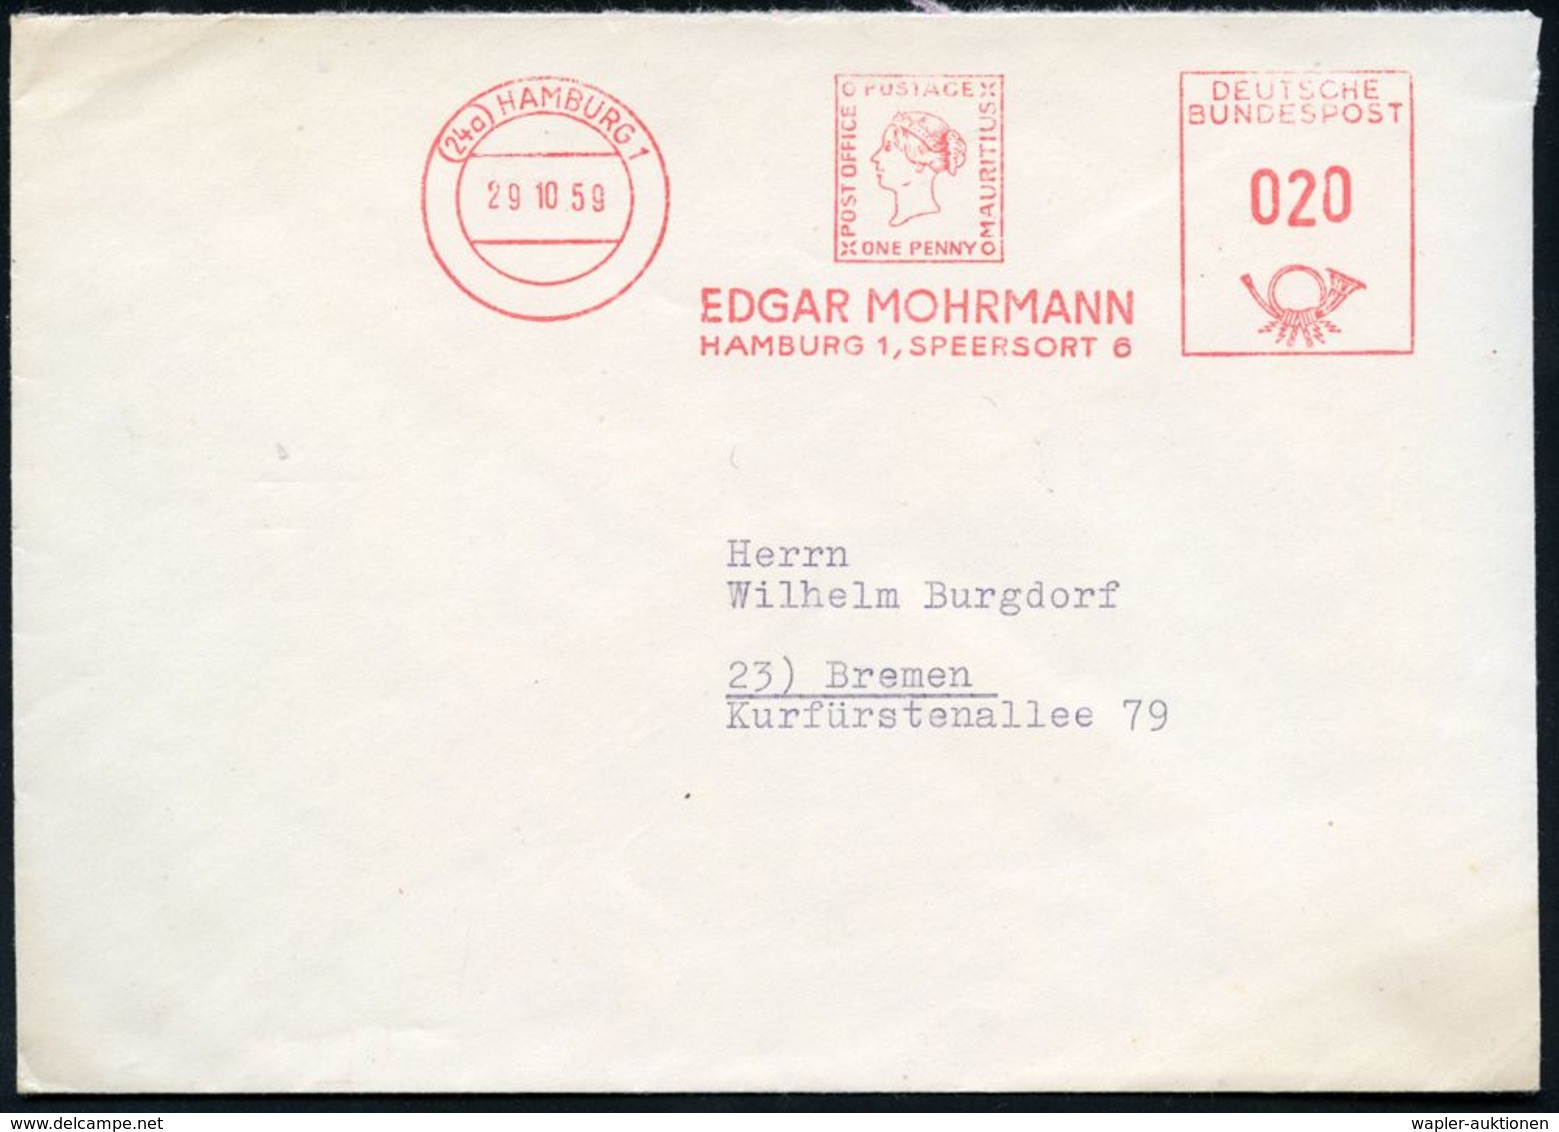 (24 A) #bzw.# 2 HAMBURG 1/ EDGAR MOHRMANN.. 1959/79 2 Verschedene AFS Mit Alter Bzw. Neuer PLZ = Je "Blaue Mauritius" 1  - Francobolli Su Francobolli